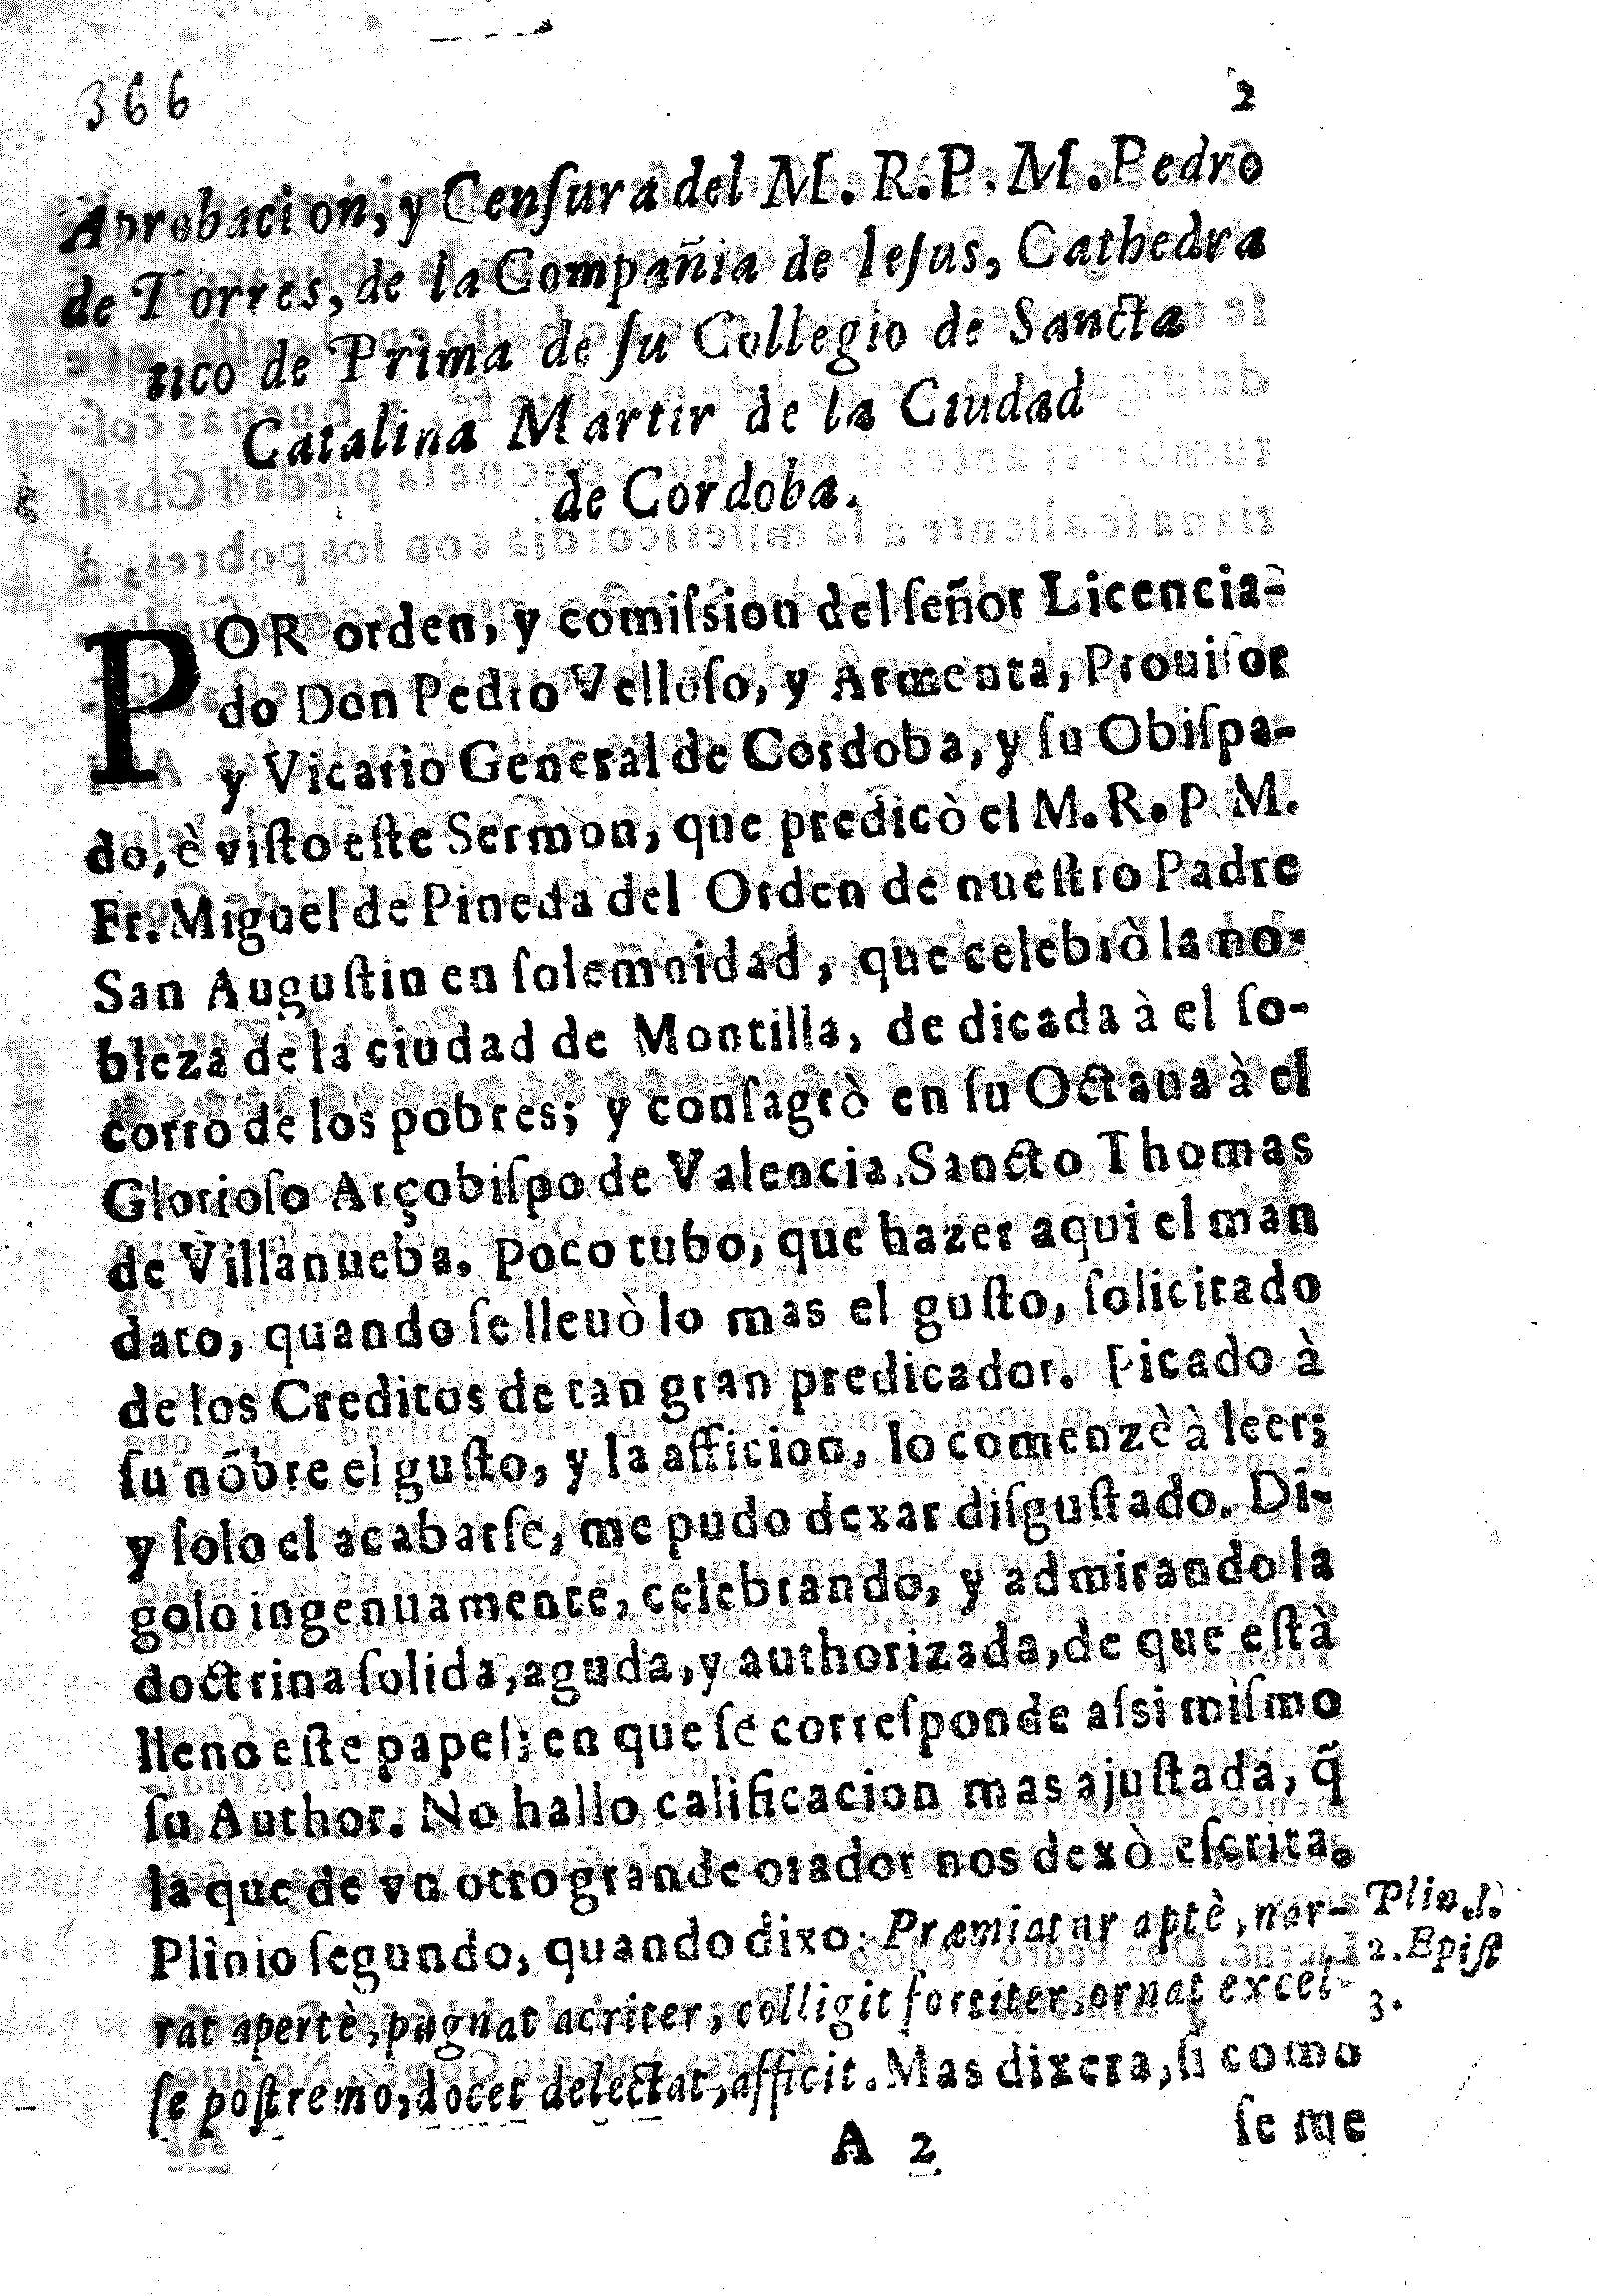 Aprobacion, y Censura del M.R.P.M. Pedro de Torres, de la Compañia de Iesus ...de la Ciudad de Cordoba. 